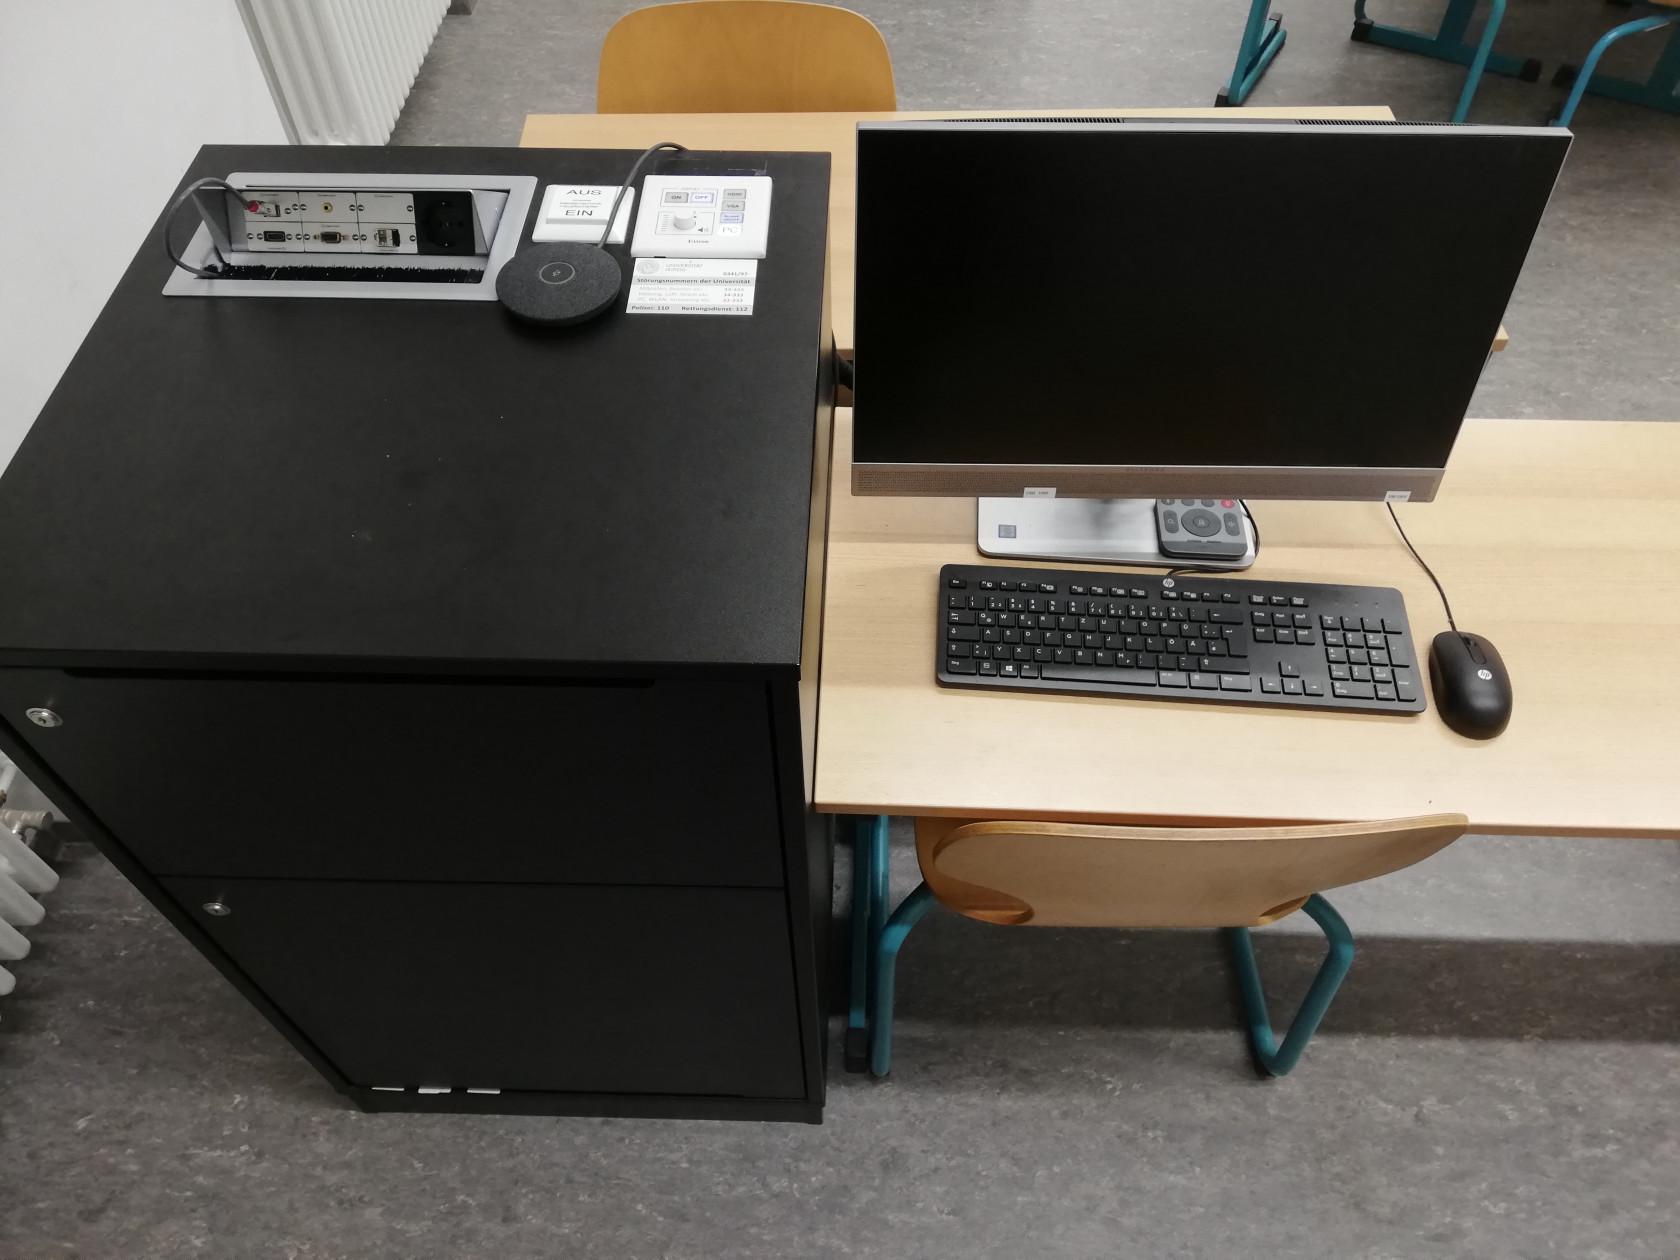 Anschlussfeld und Uni-PC mit Tastatur und Maus